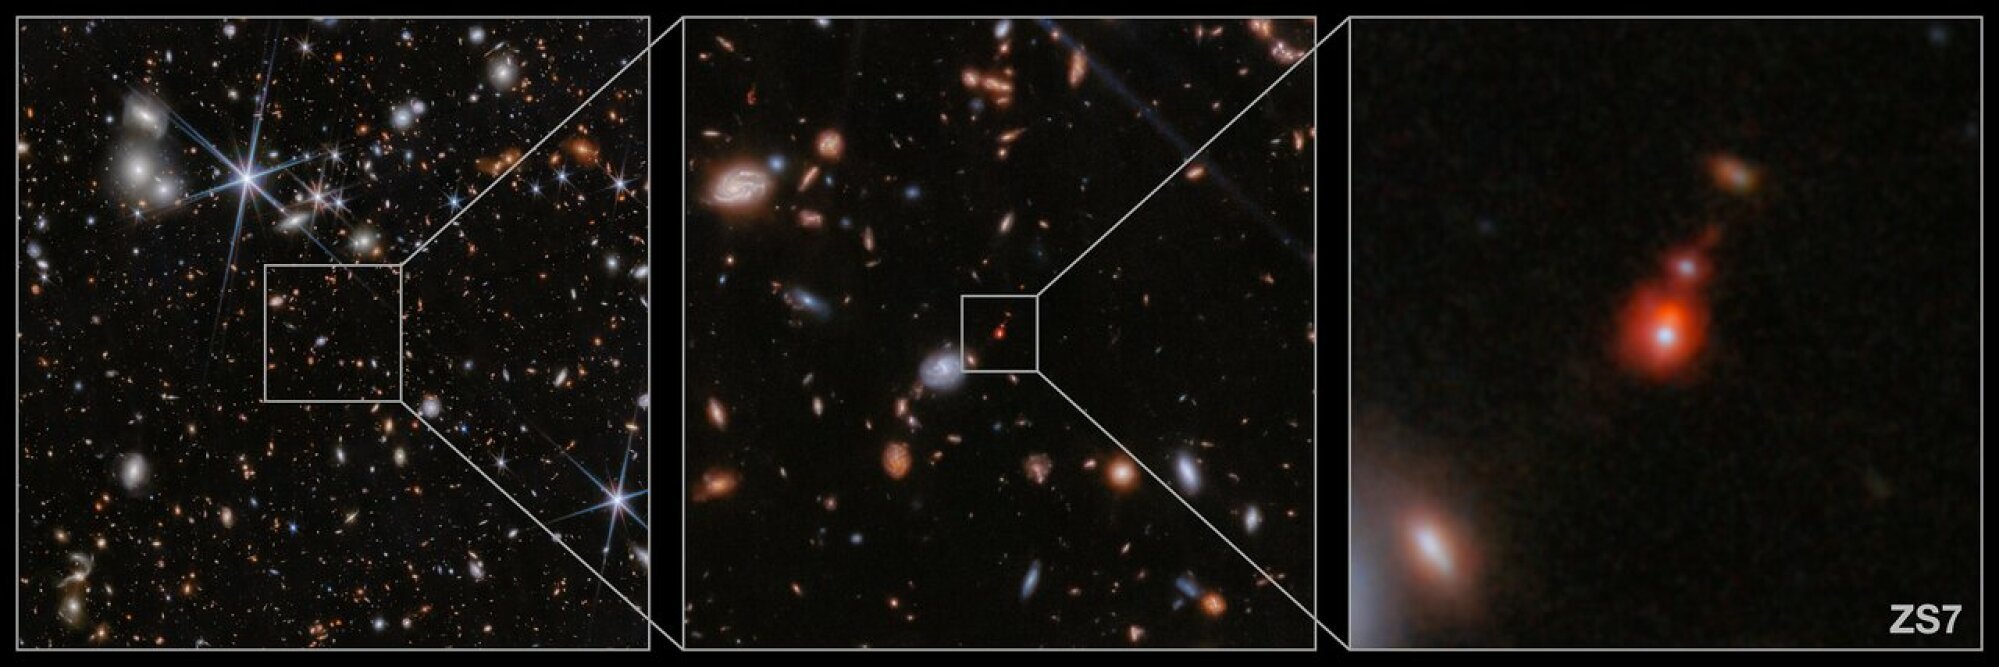 Sur l'image de droite, les deux zones rougeâtres au centre montrent l'ancienne fusion de deux galaxies.